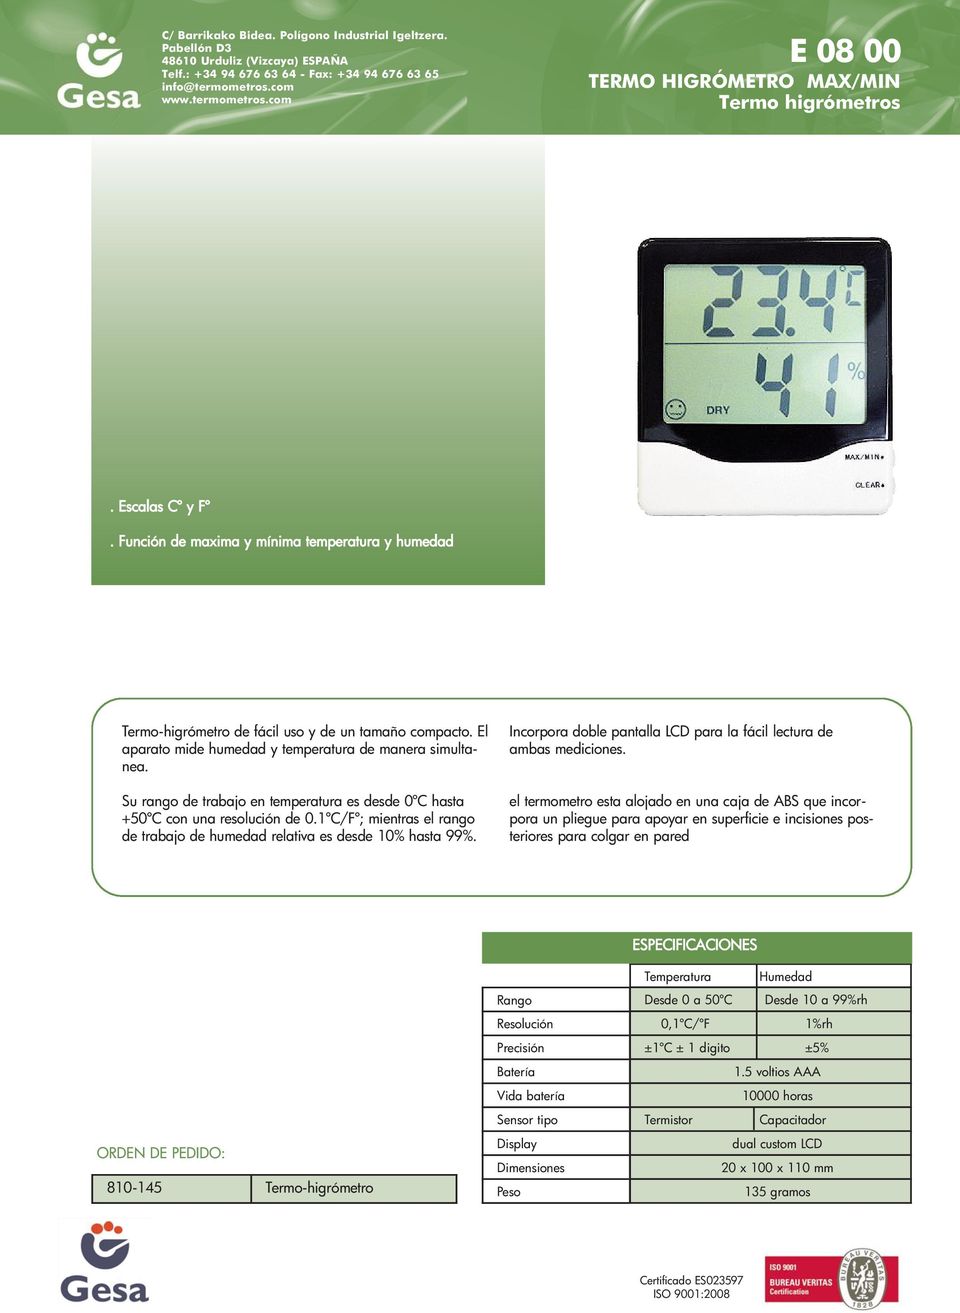 1ºC/Fº; mientras el rango de trabajo de humedad relativa es desde 10% hasta 99%. Incorpora doble pantalla LCD para la fácil lectura de ambas mediciones.